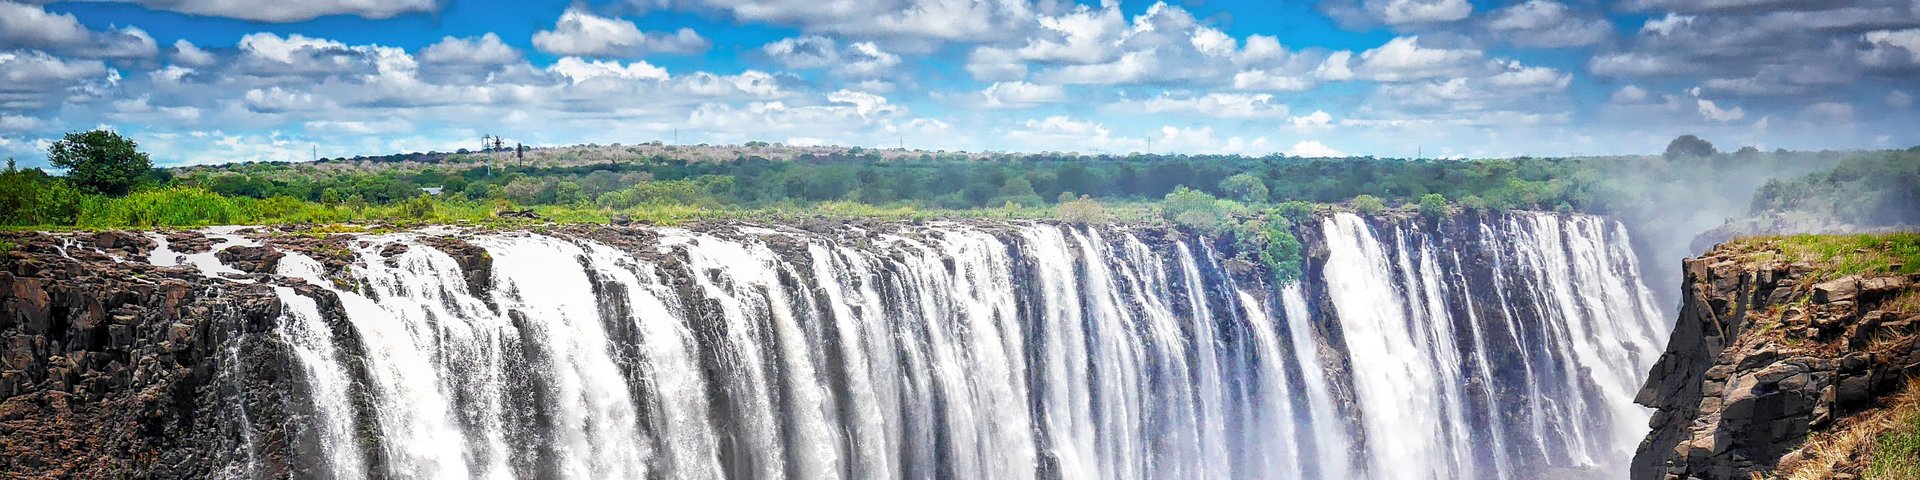 Blick auf die tosenden Victoria Falls in Sambia